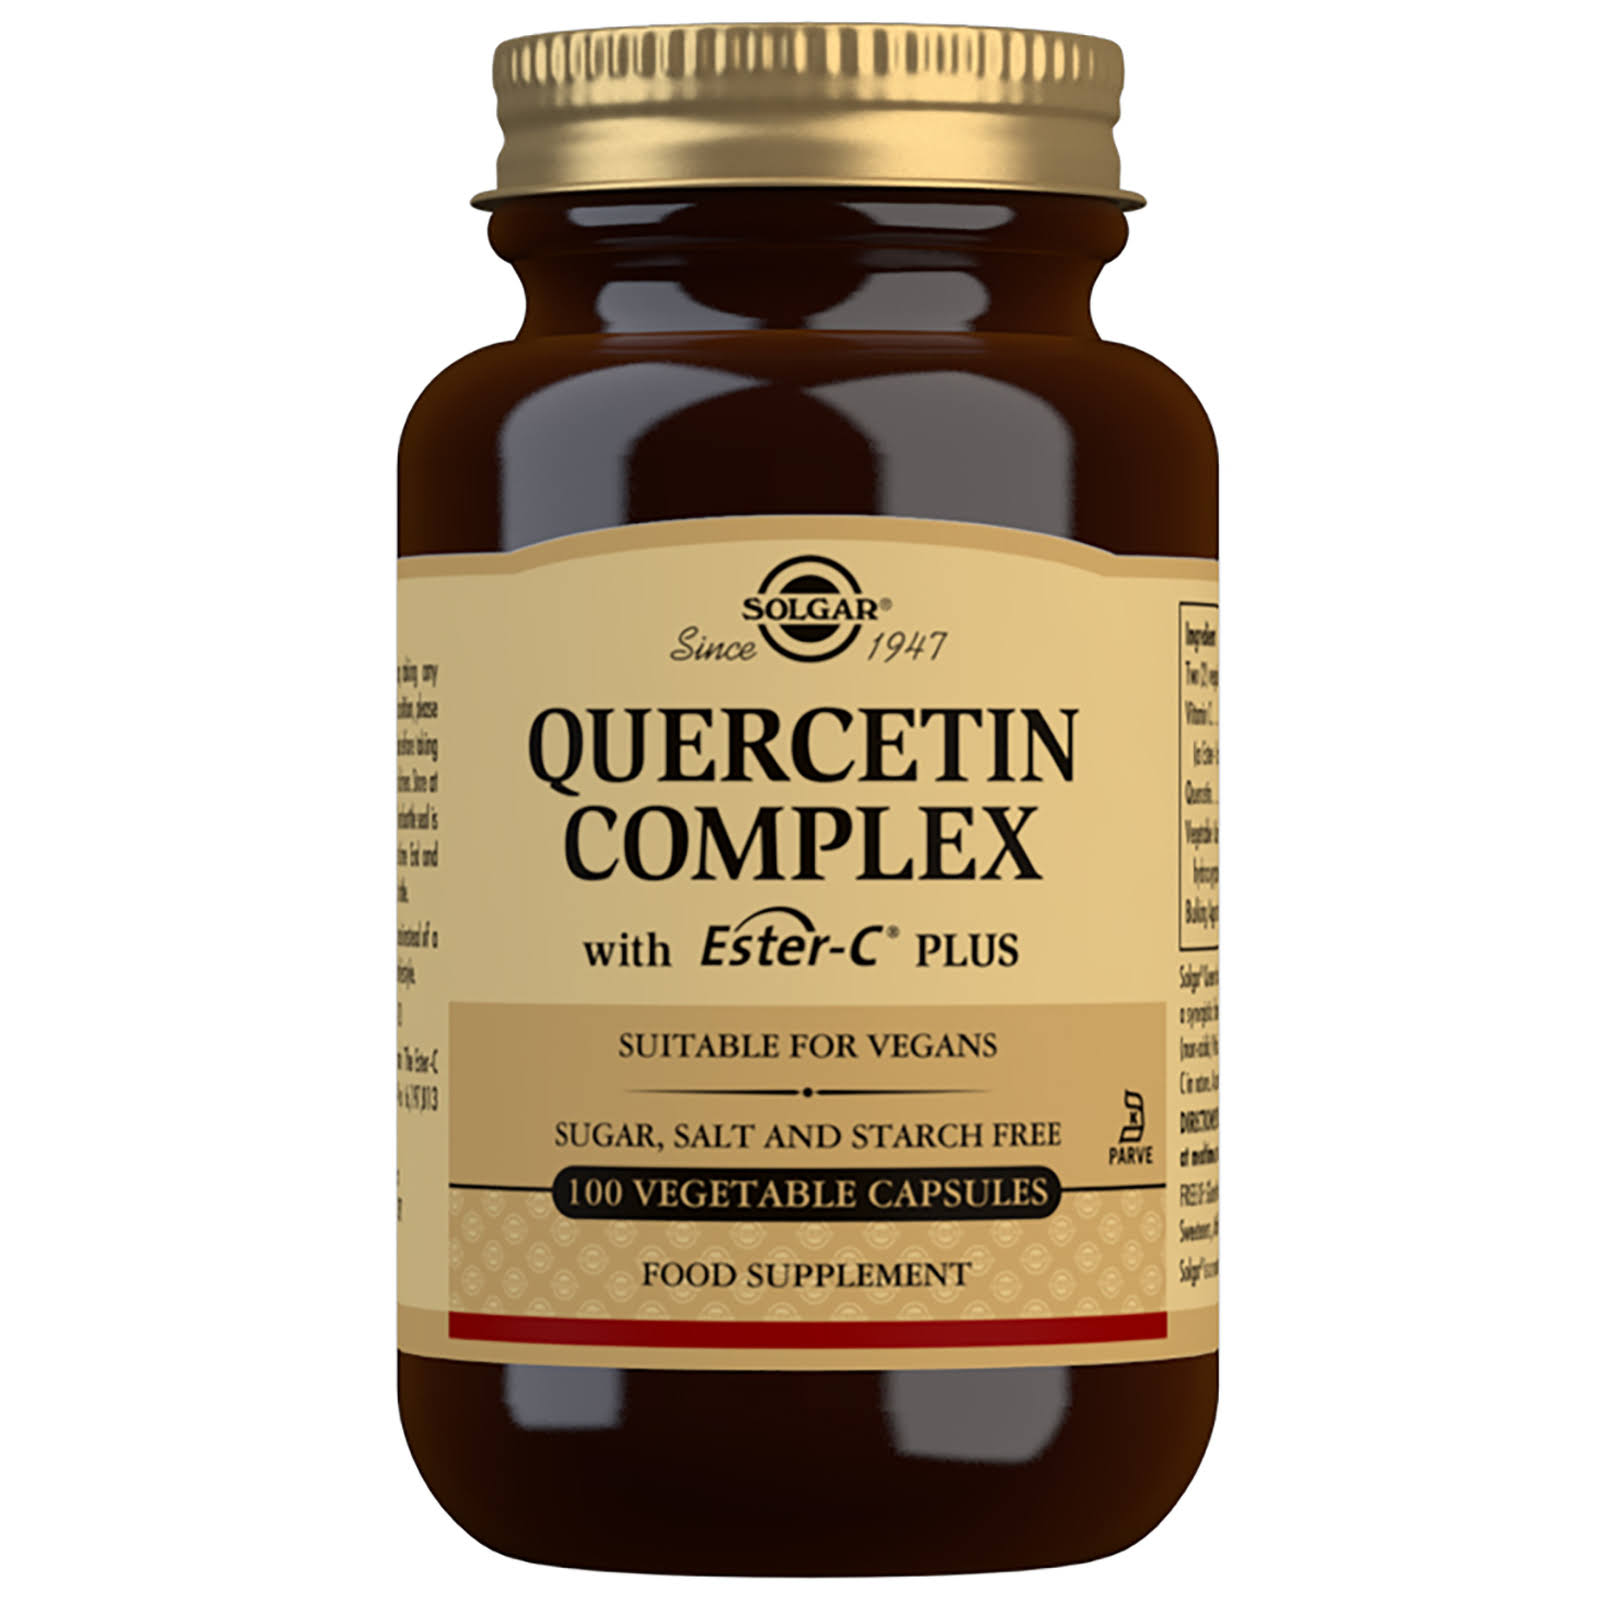 Solgar Quercetin Complex Plus Ester-C Plus Vegetable Capsules